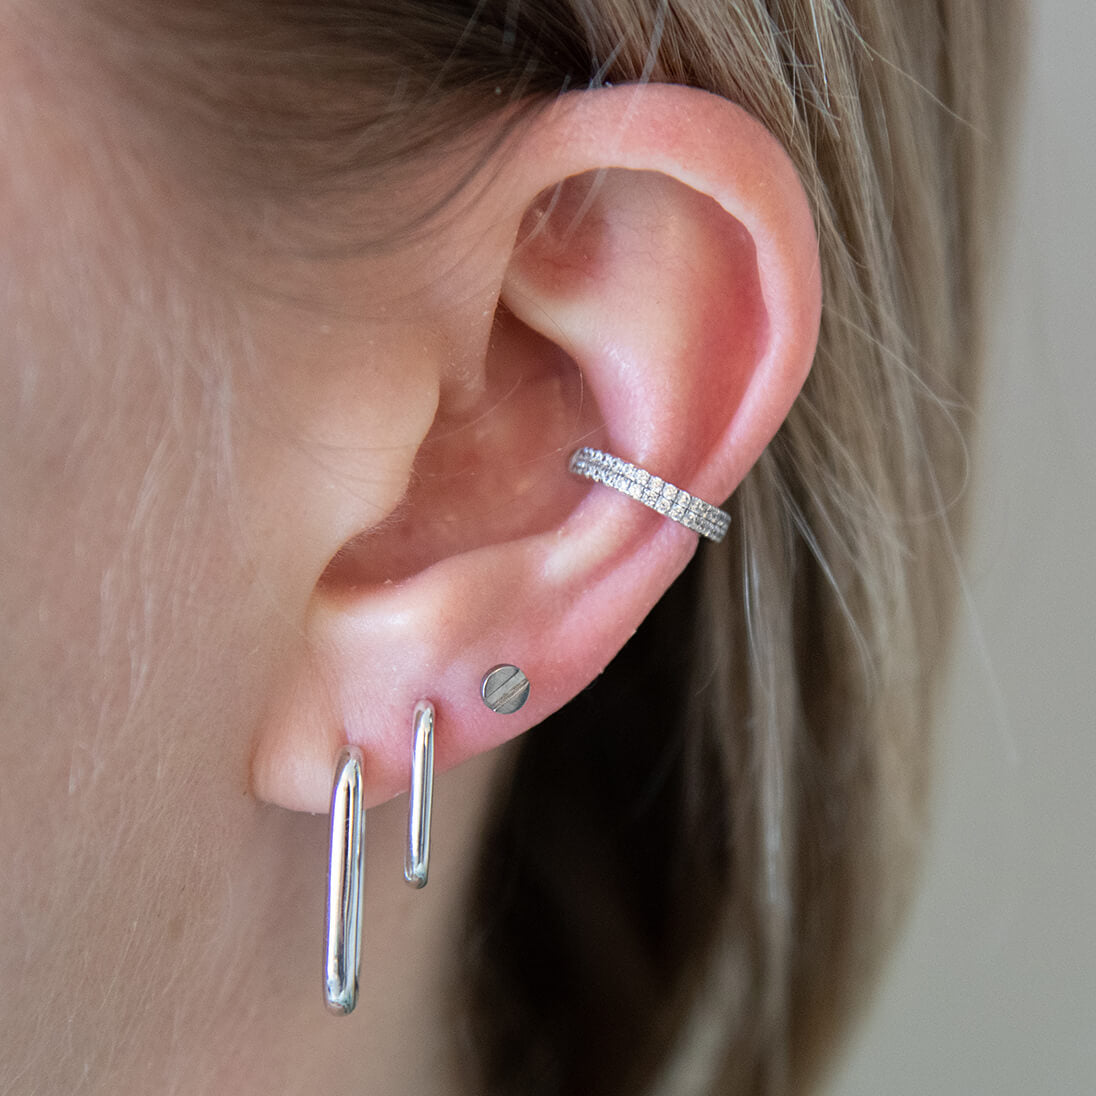 Dainty flat piercing and flat back studs for lobe piercings | Earings  piercings, Minimalist ear piercings, Flat piercing